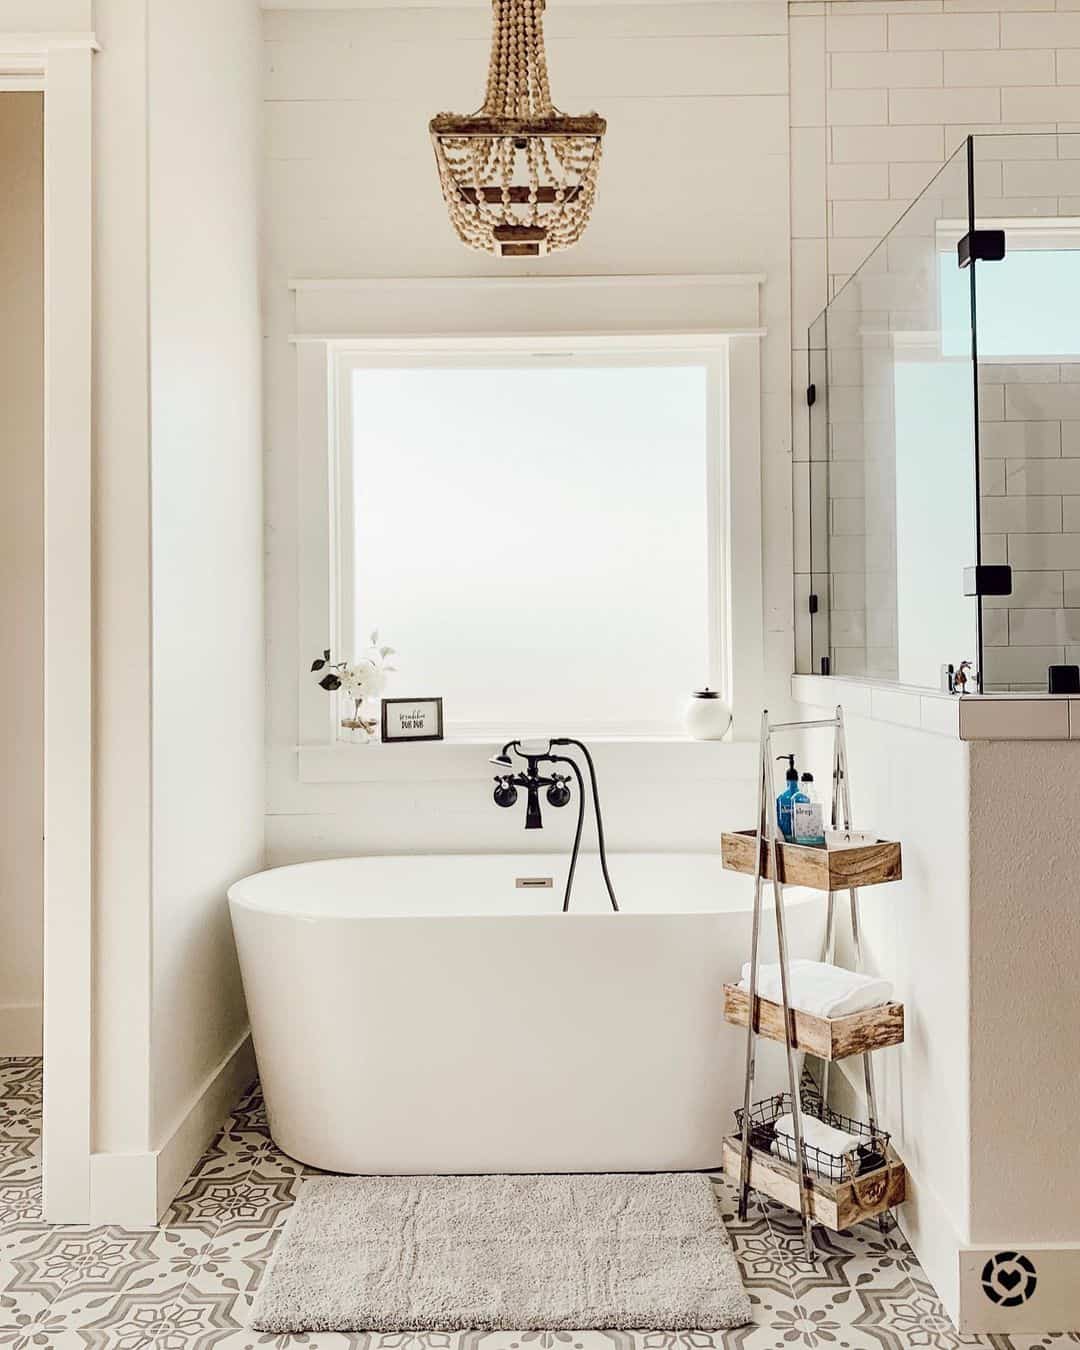 38 Bathtub Chandelier Ideas That Will Turn Your Bathroom into a ...